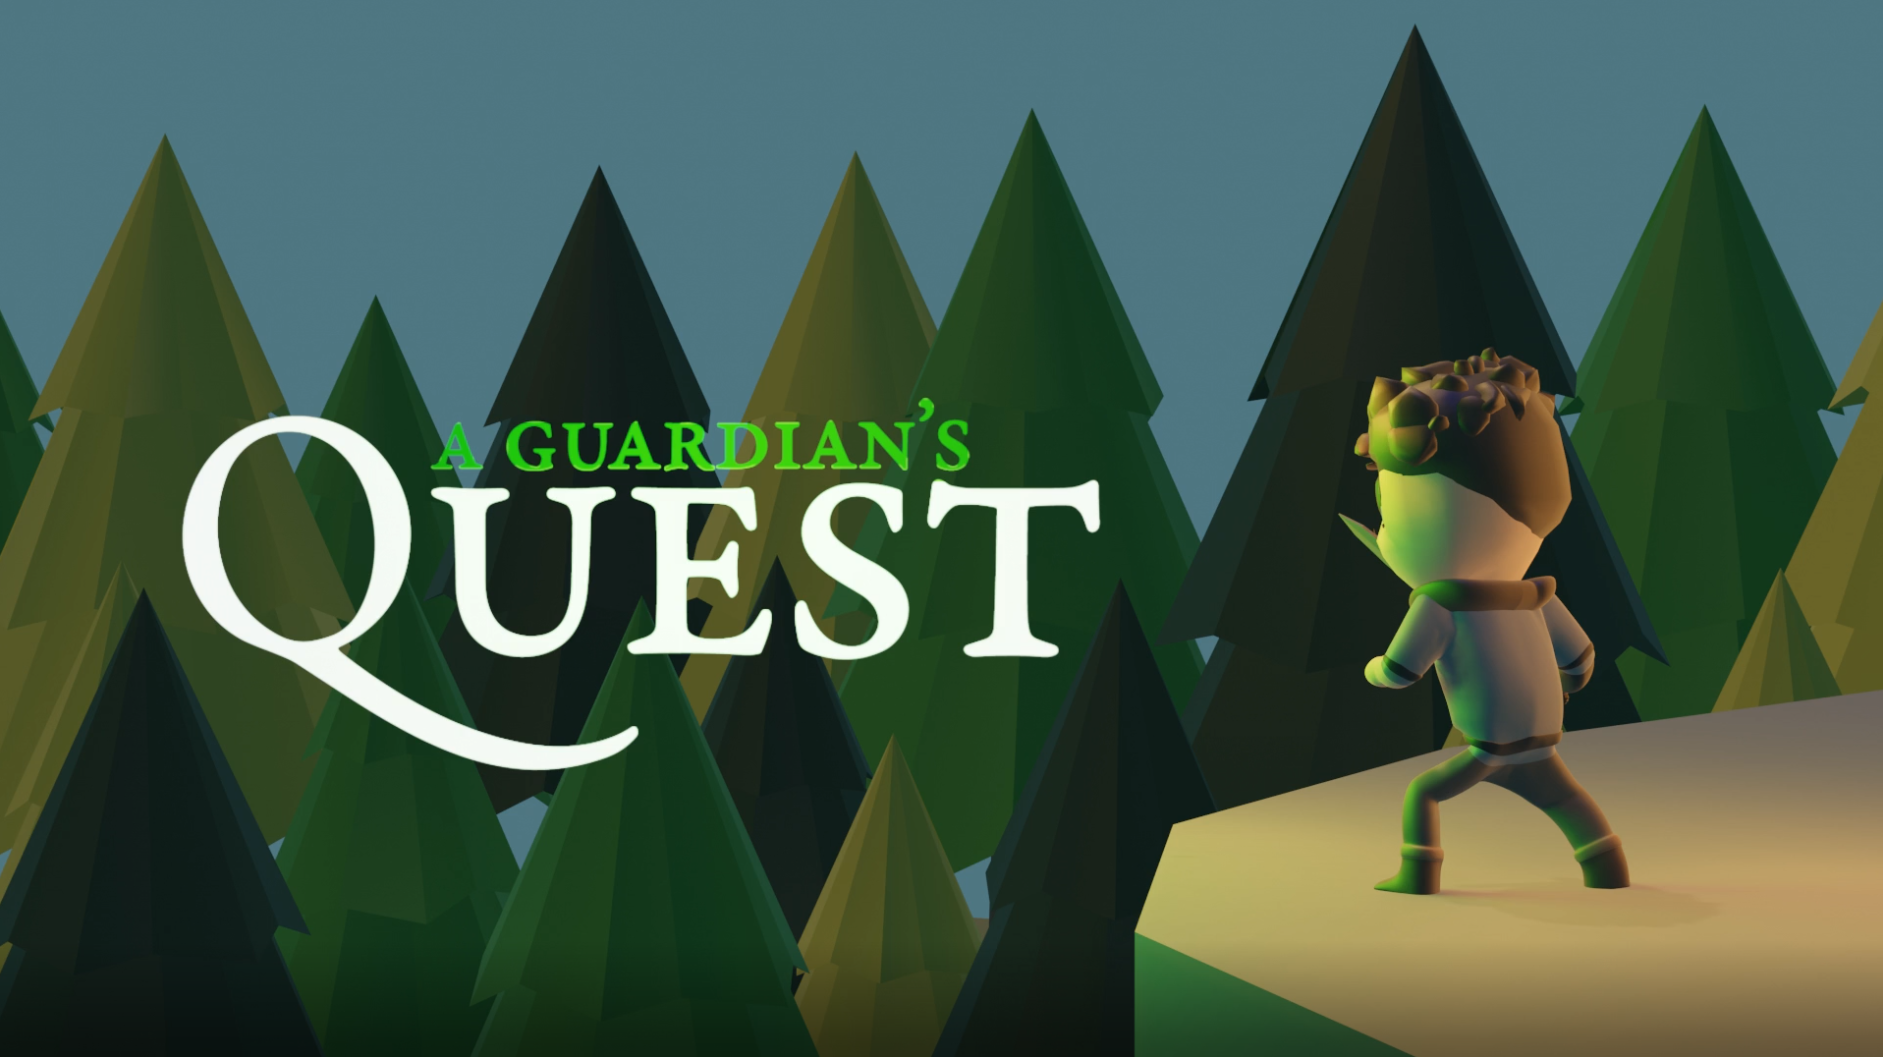 A Guardian's Quest